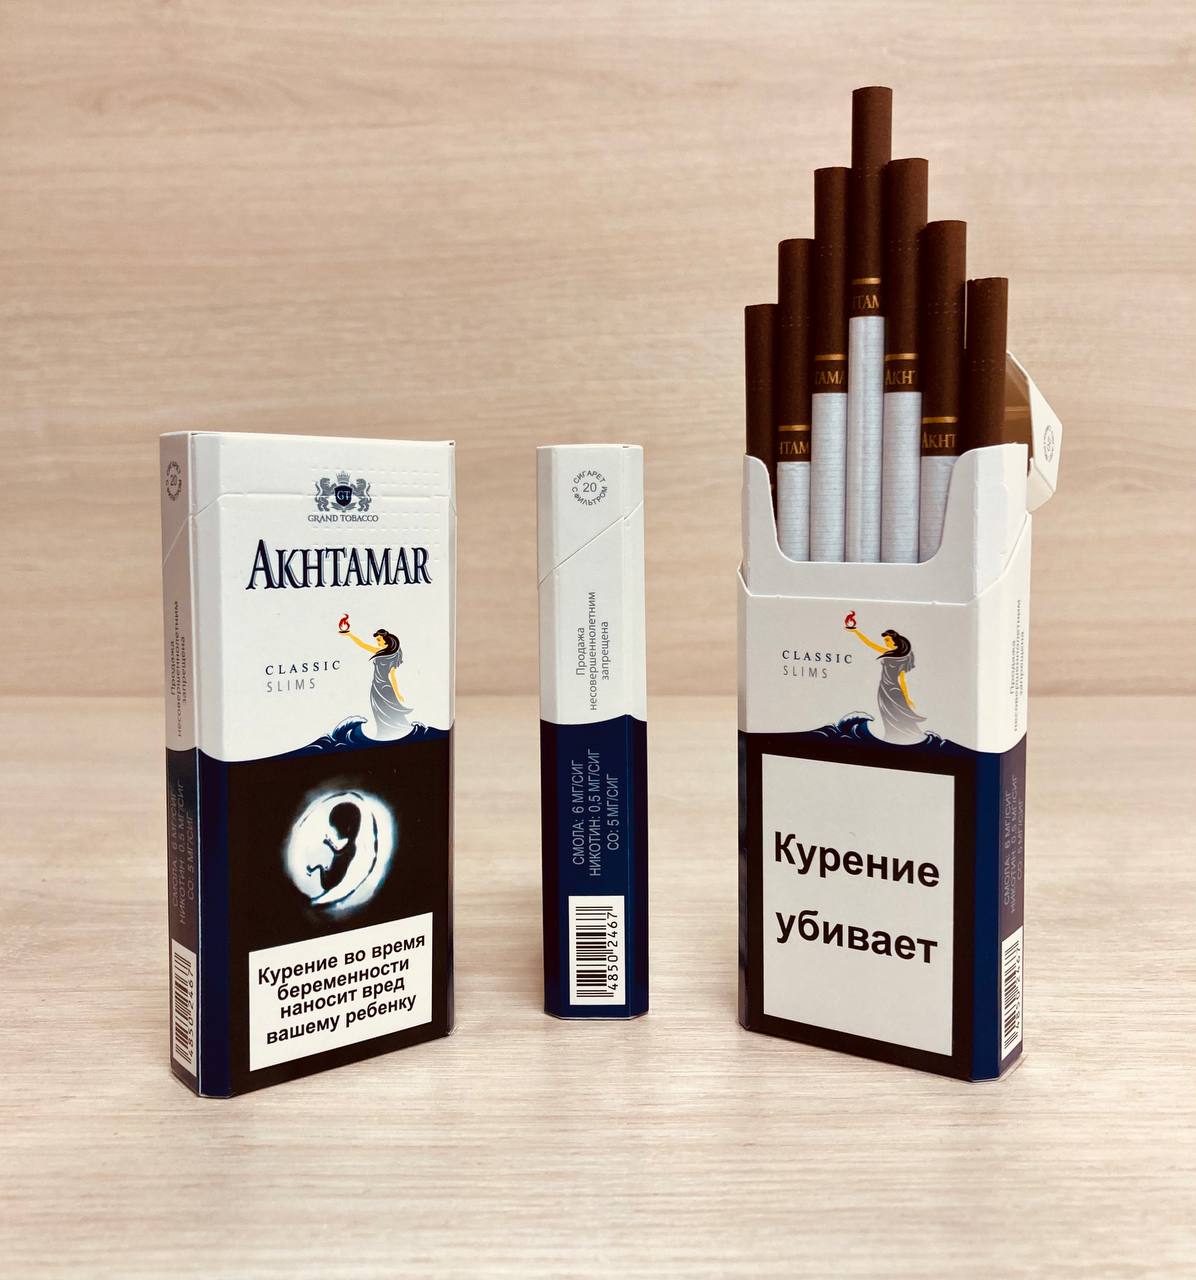 Купить армянские сигареты в интернет. Akhtamar Classic Slims. Сигареты Akhtamar Classic. Армянские сигареты Ахтамар Классик. Сигареты Классик Слимс.